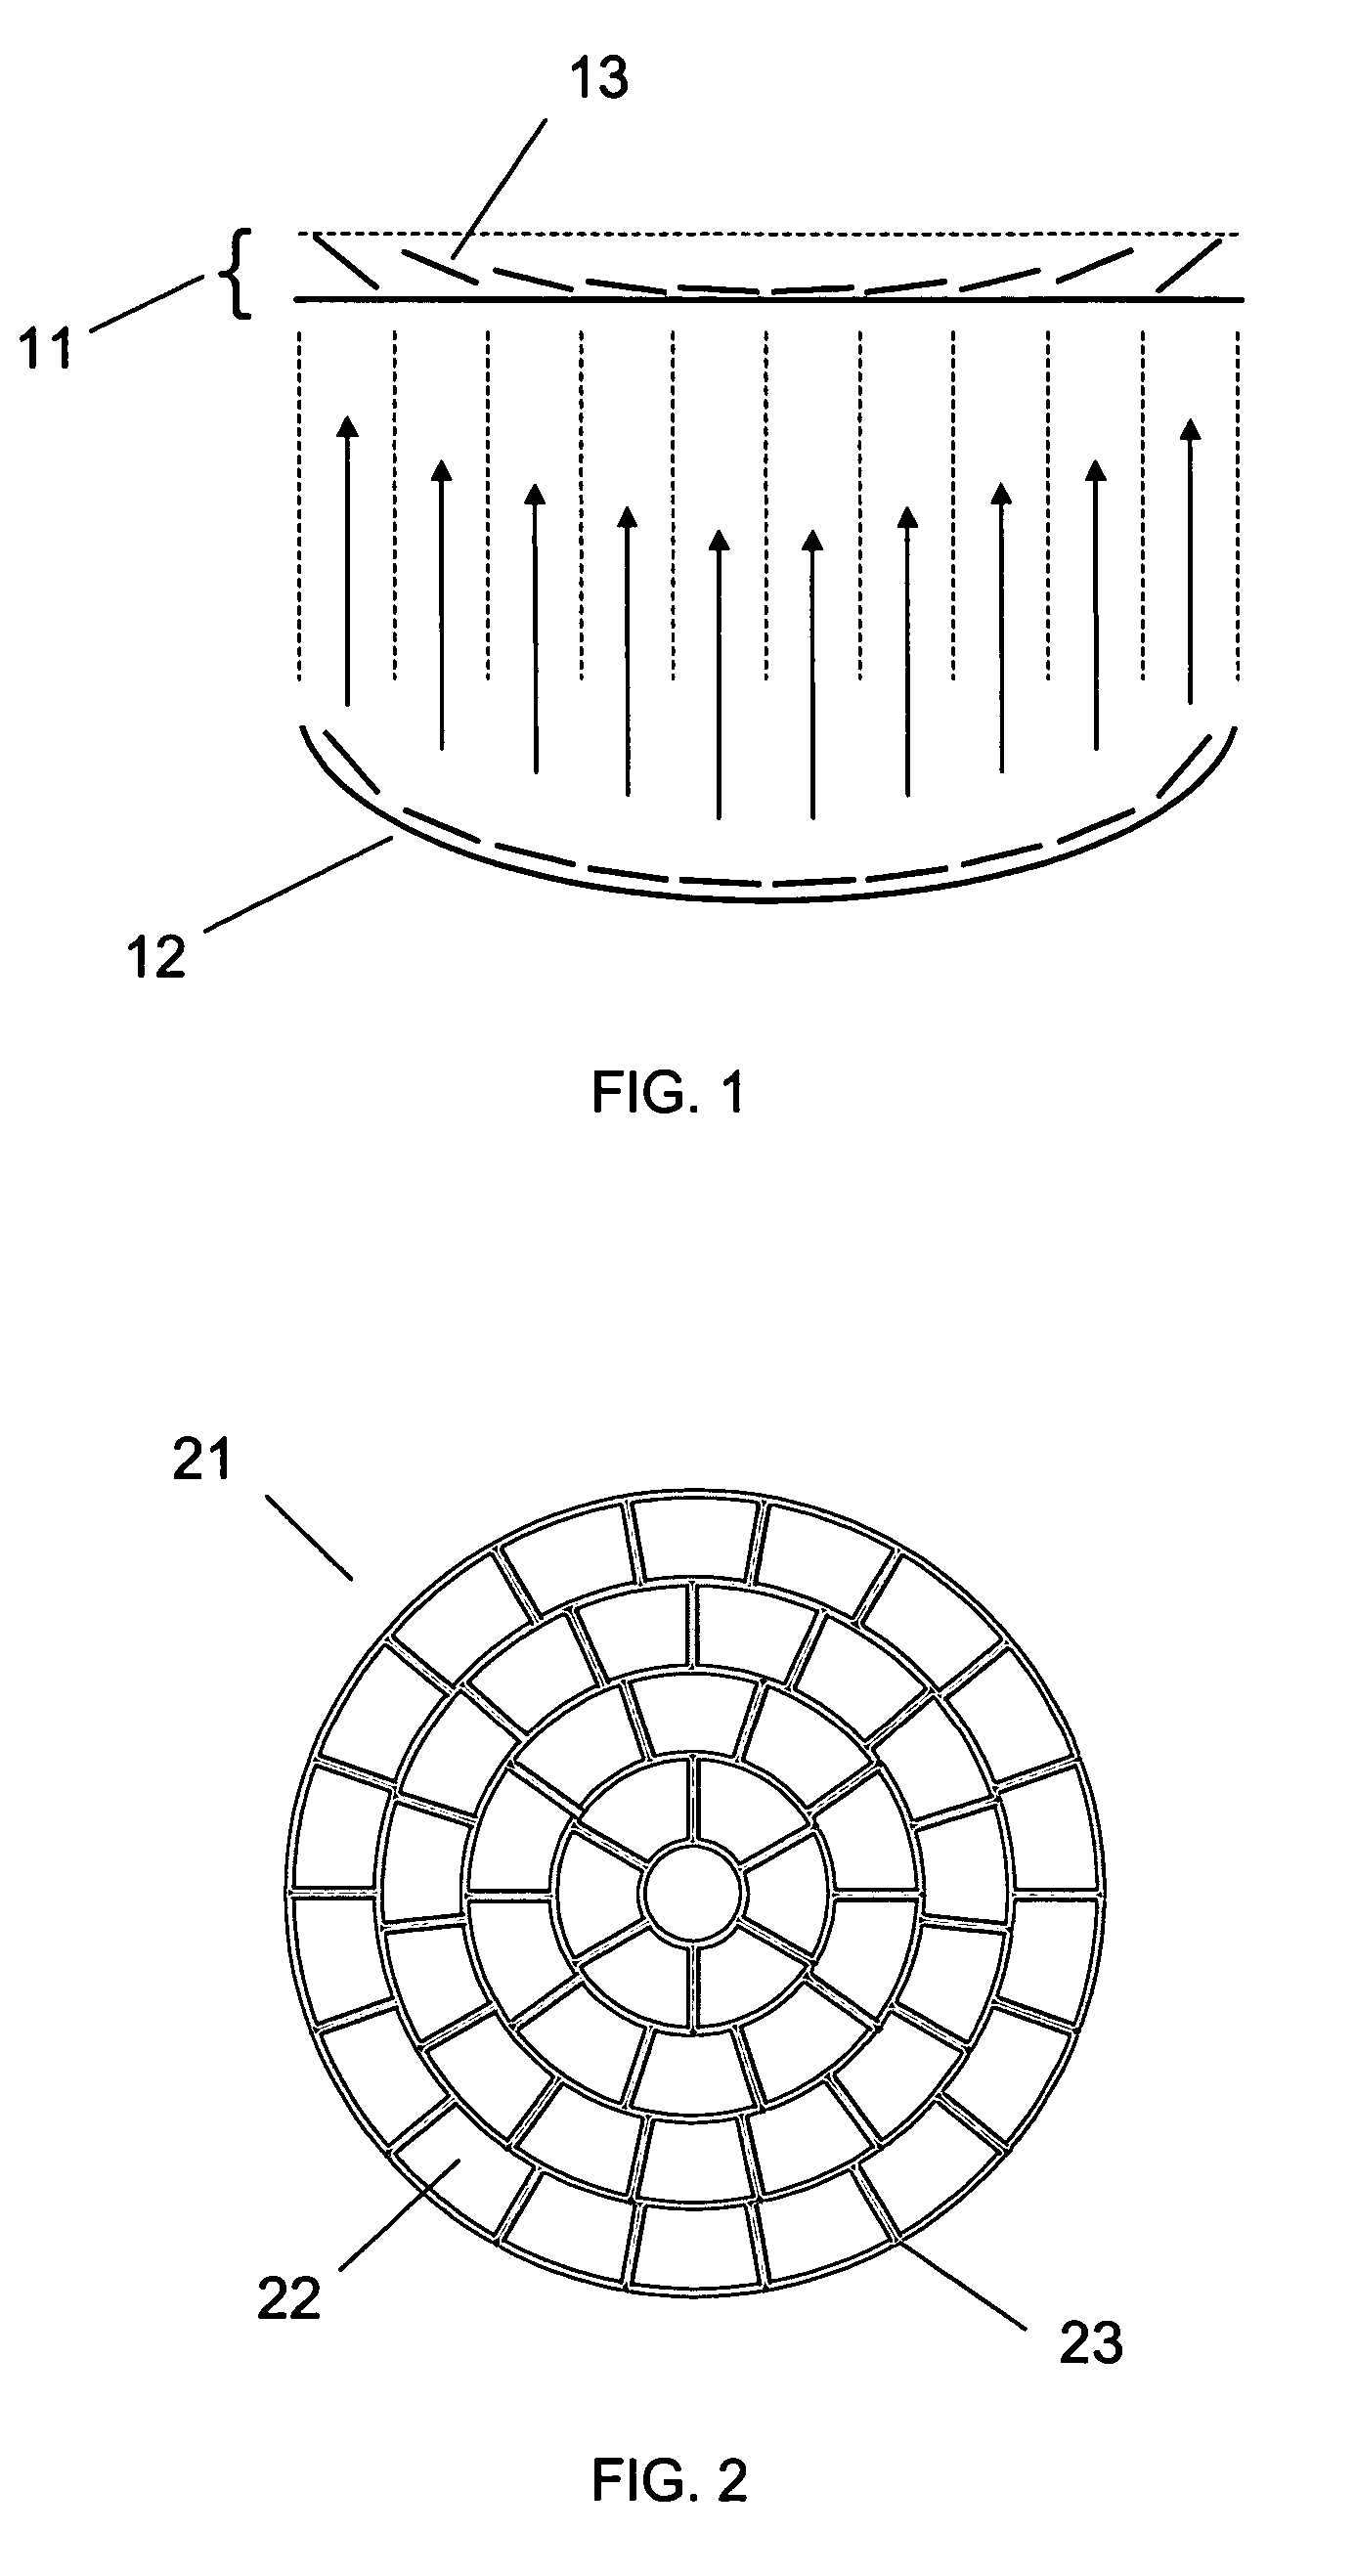 Array of micromirror array lenses